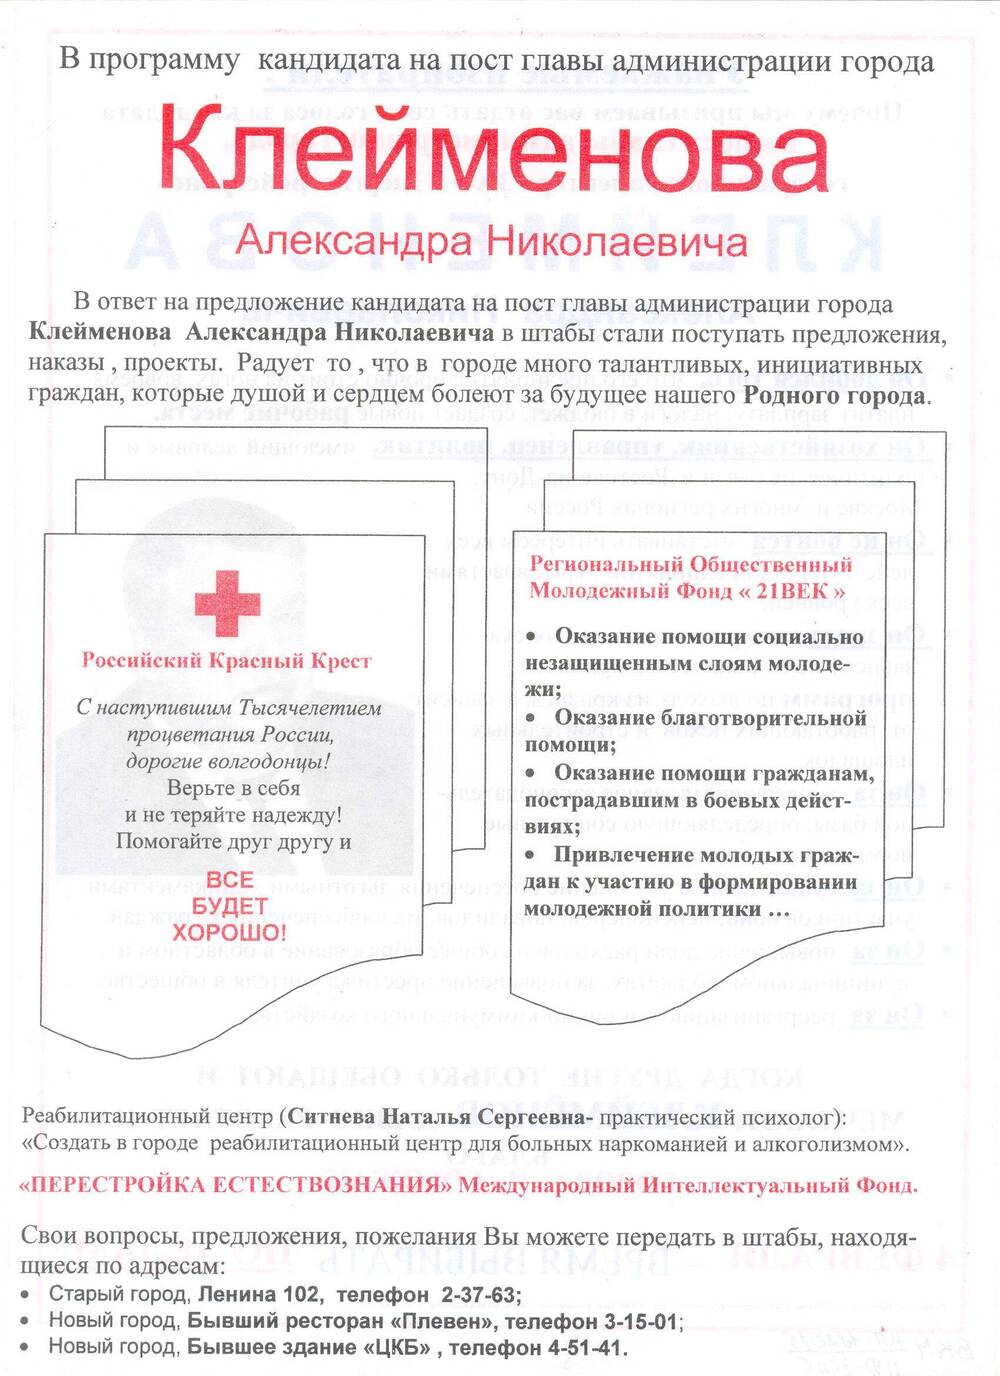 Листовка агитационная кандидата на пост главы администрации города Клейменова Александра Николаевича
